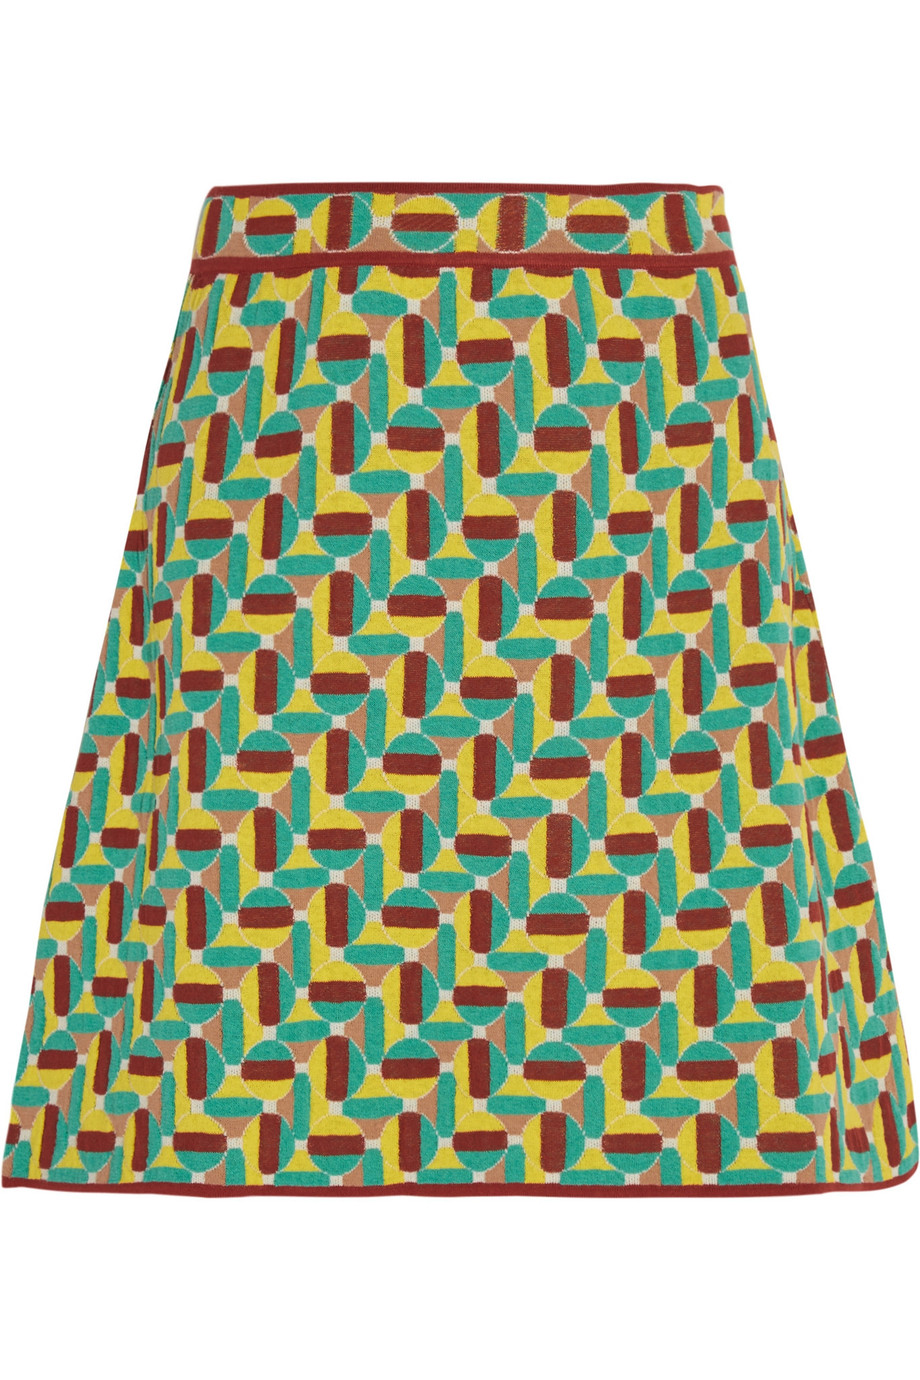 M Missoni Jacquard Knit Cotton Blend Mini Skirt